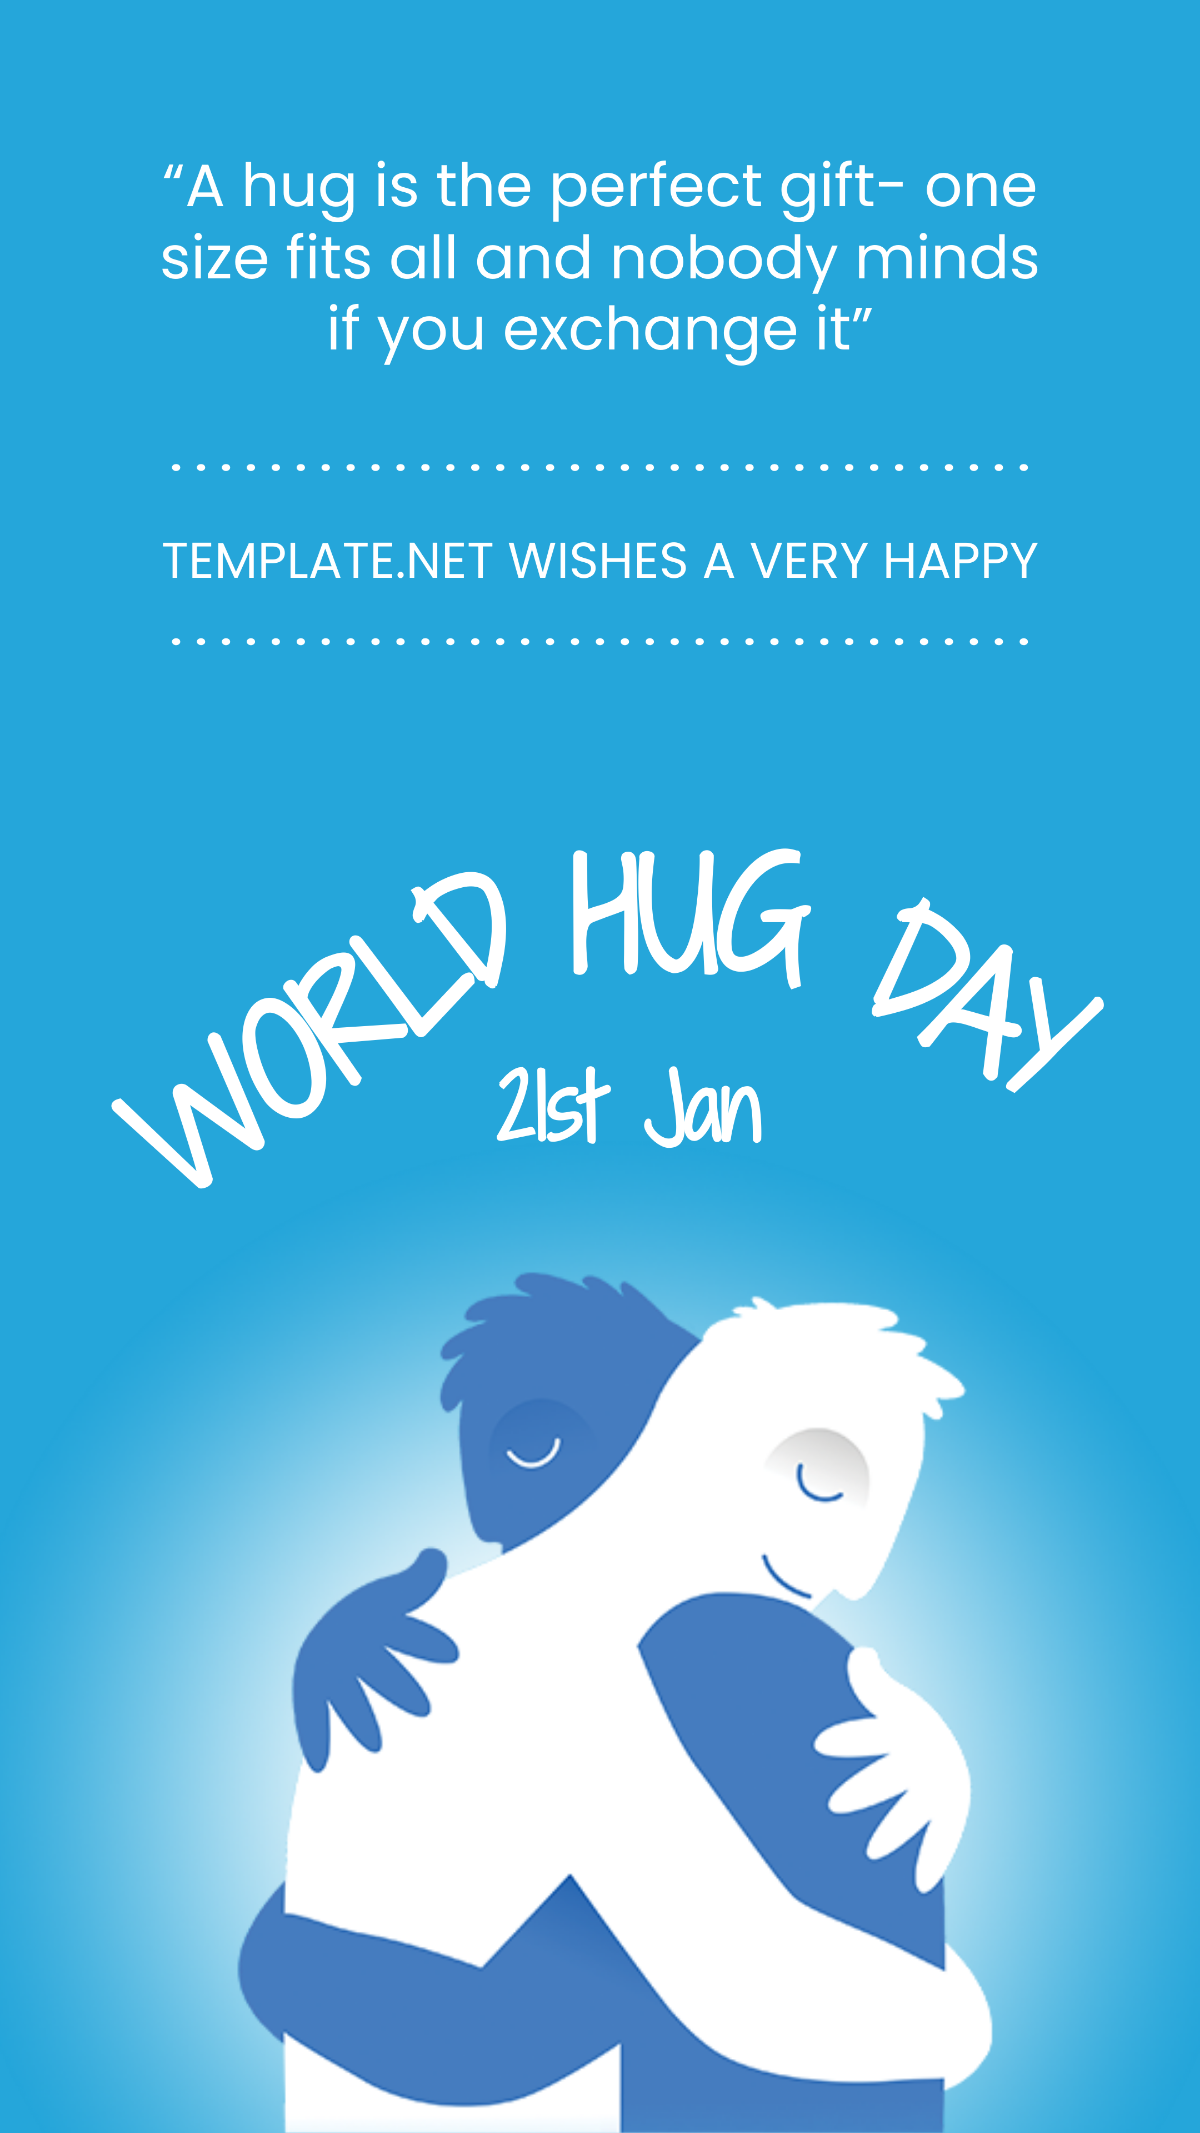 World Hug Day Whatsapp Image